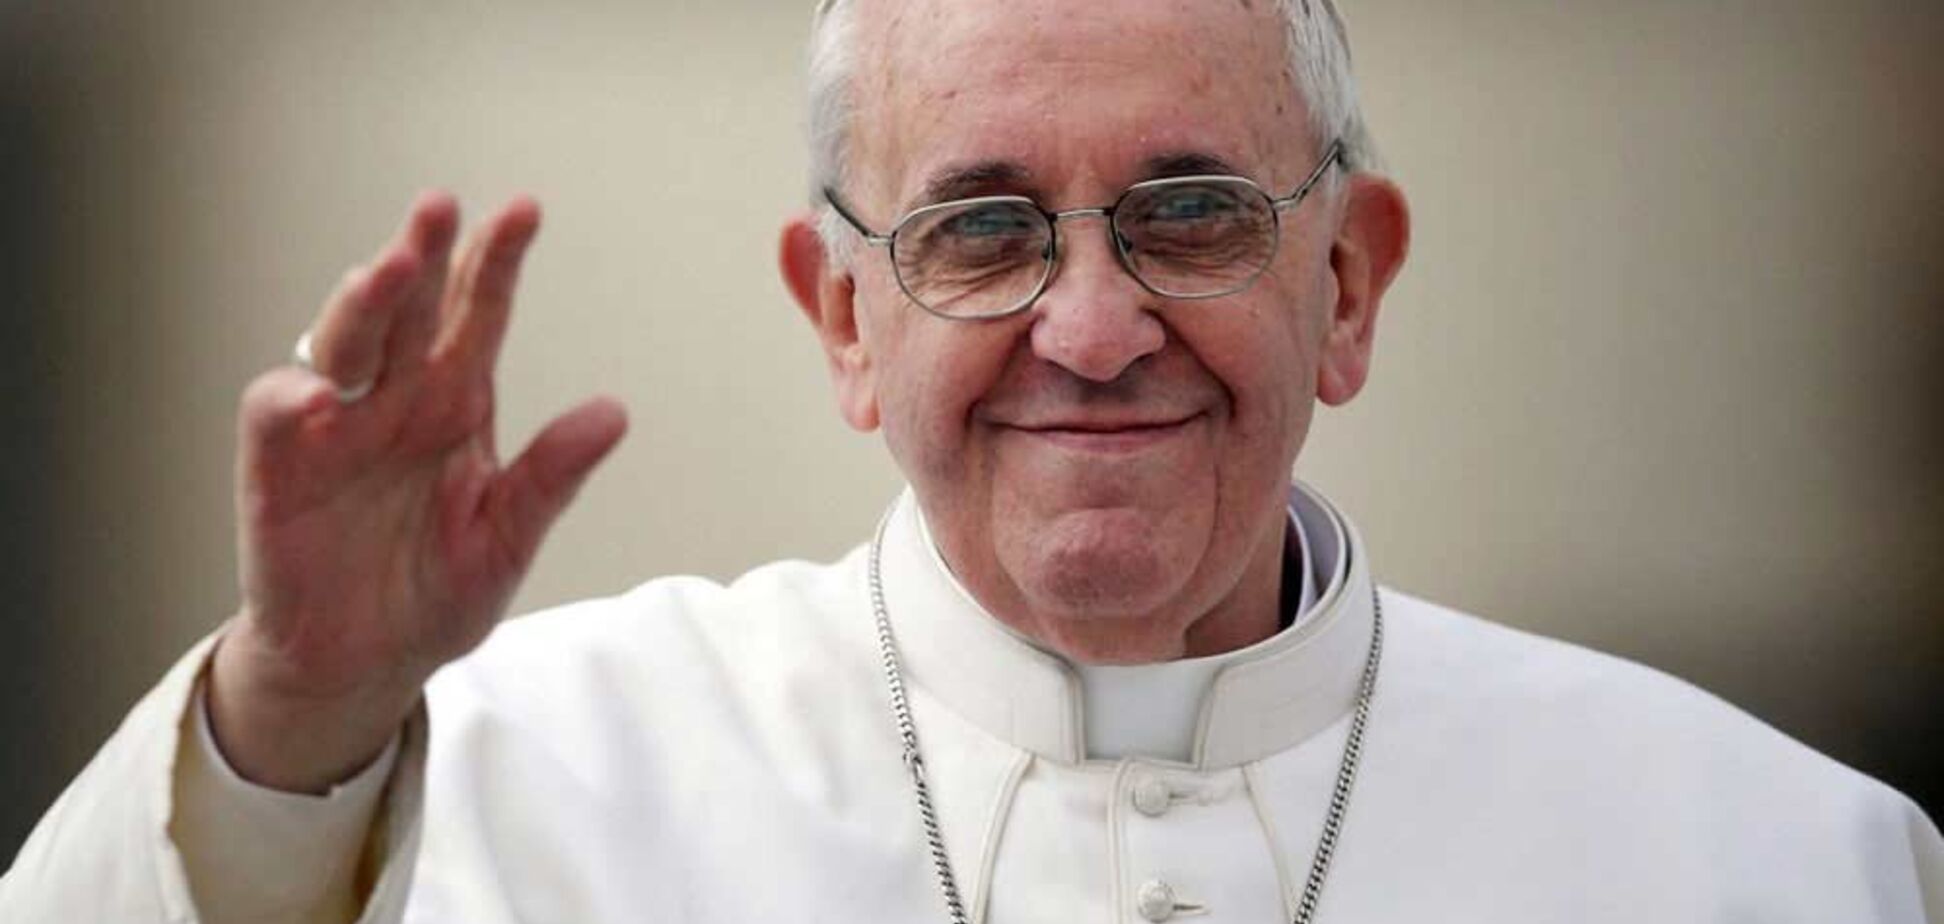 'Радію!' Папа Римський прокоментував обмін полоненими між Києвом і Москвою